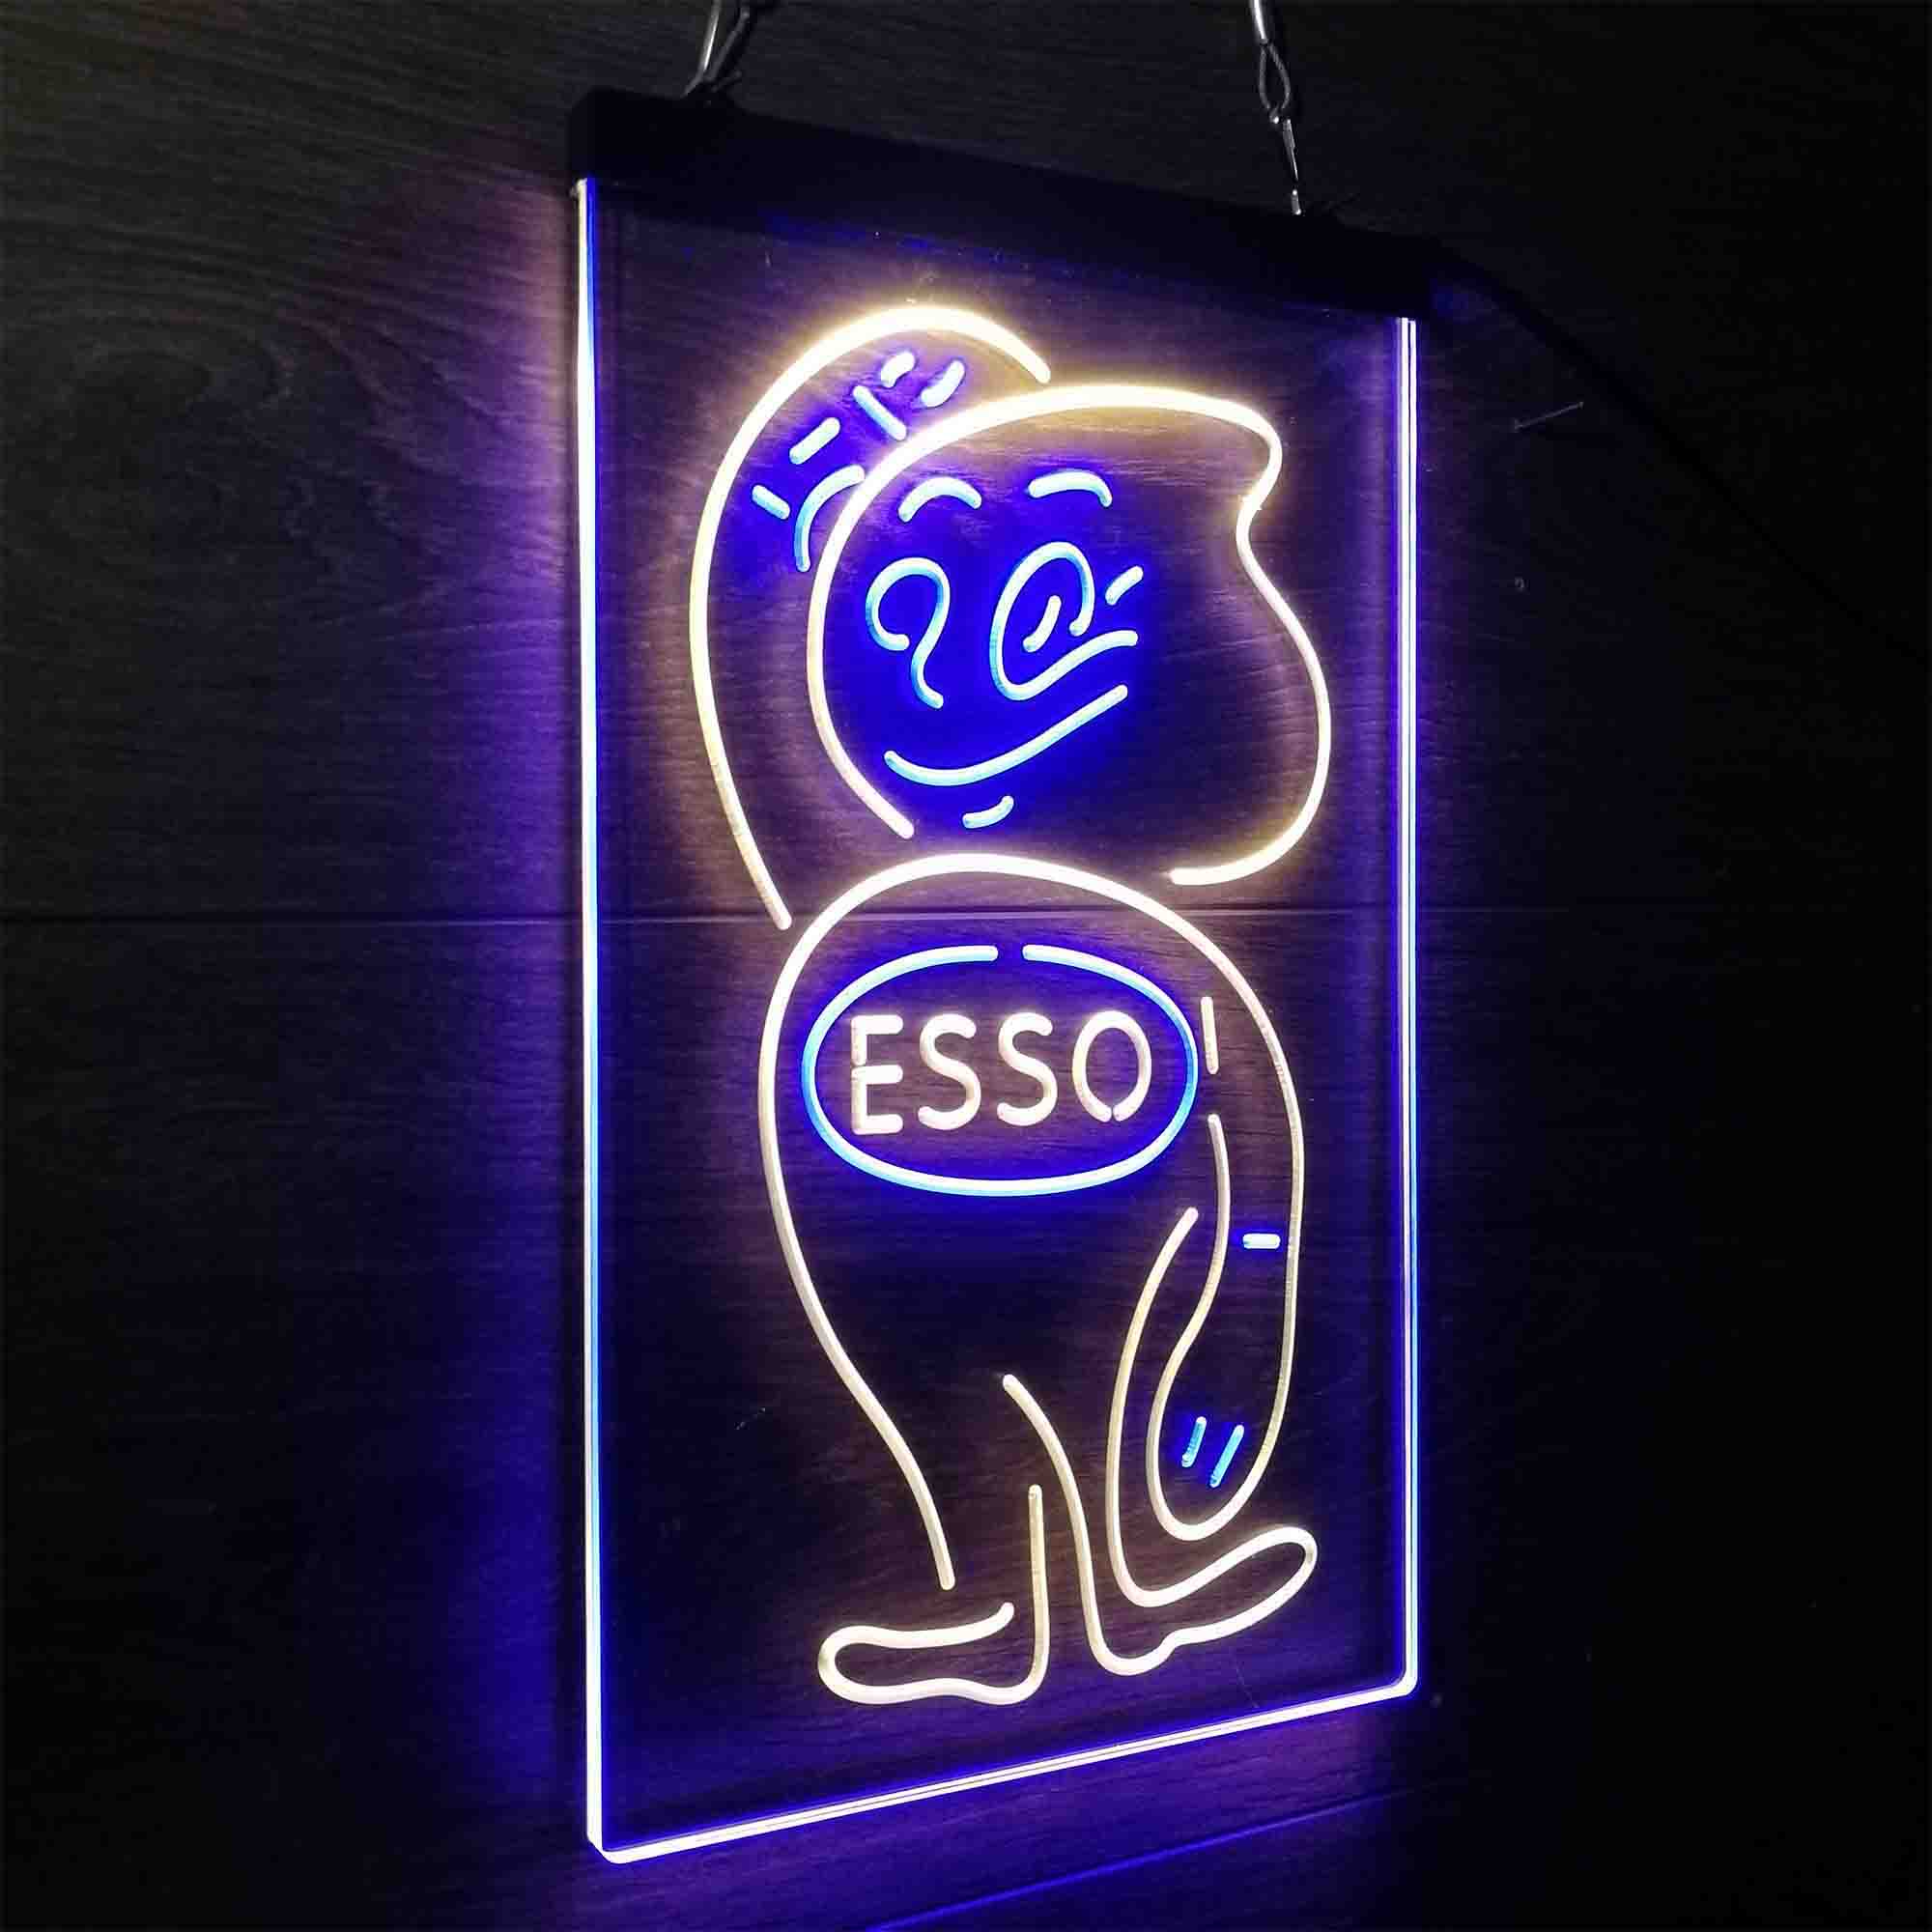 Esso Mascot Oil Gasoline LED Neon Sign